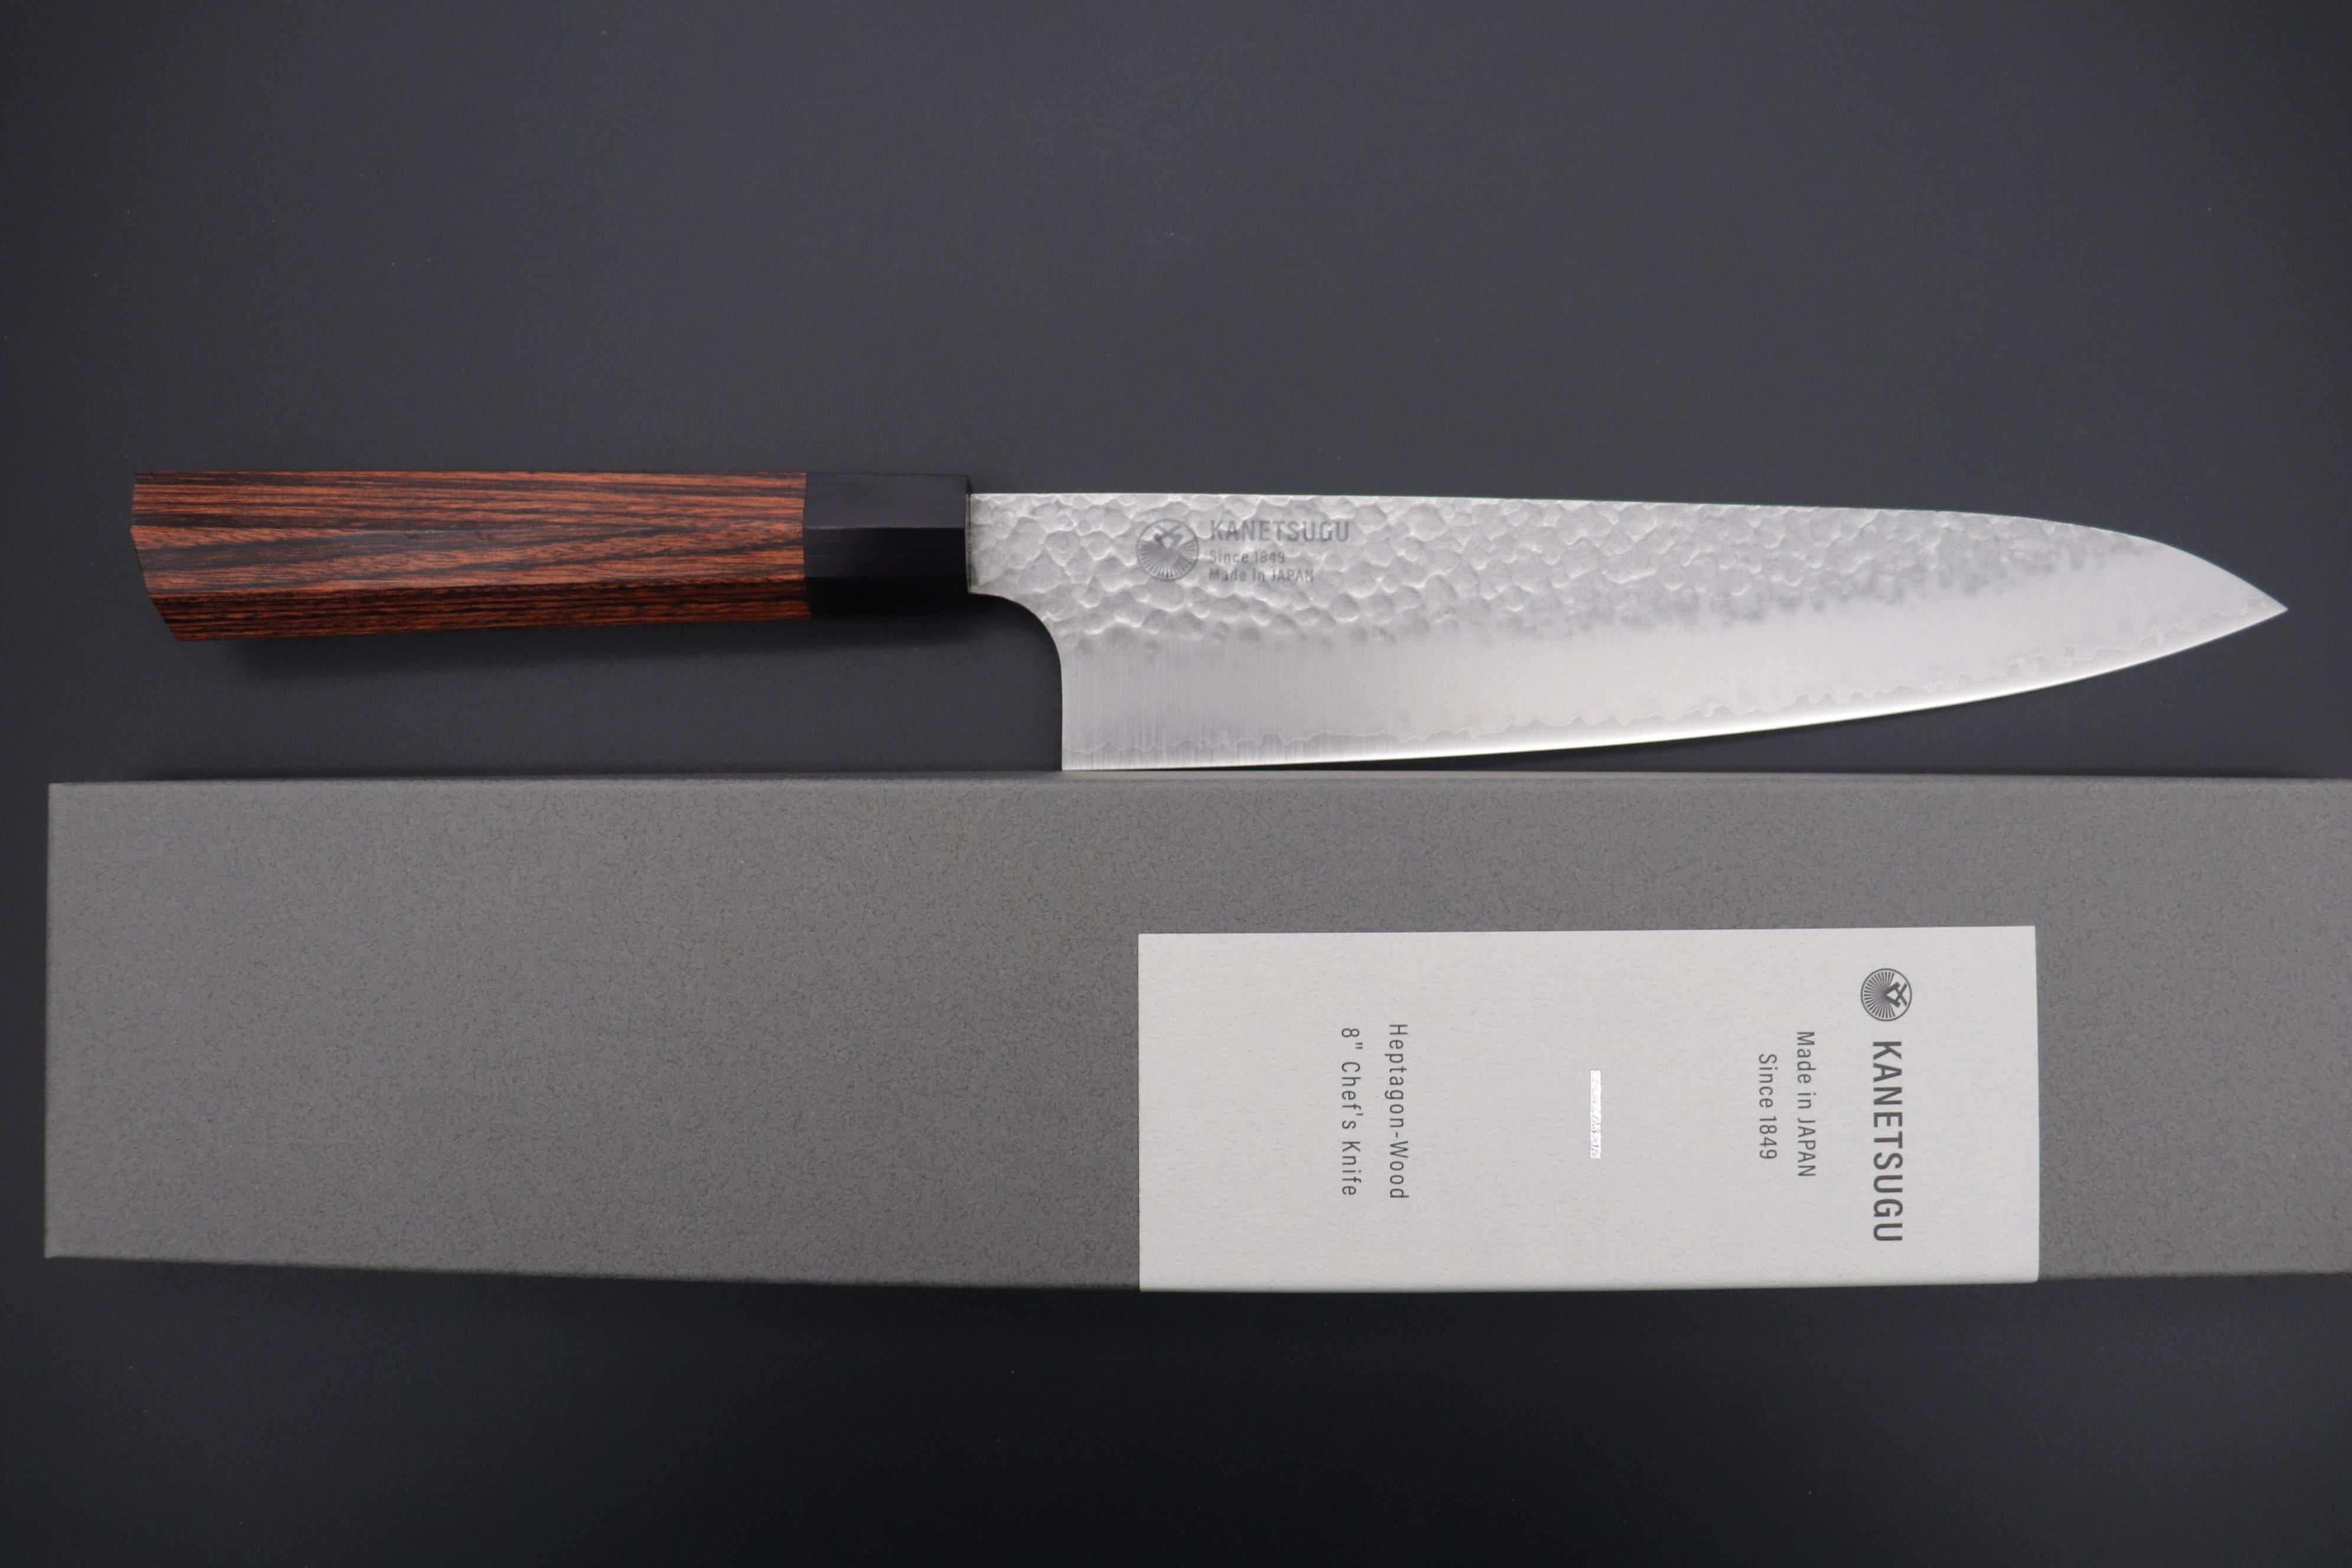 Vintage Japanese Steak Knife Set of 8 Mismatched Wooden Handles